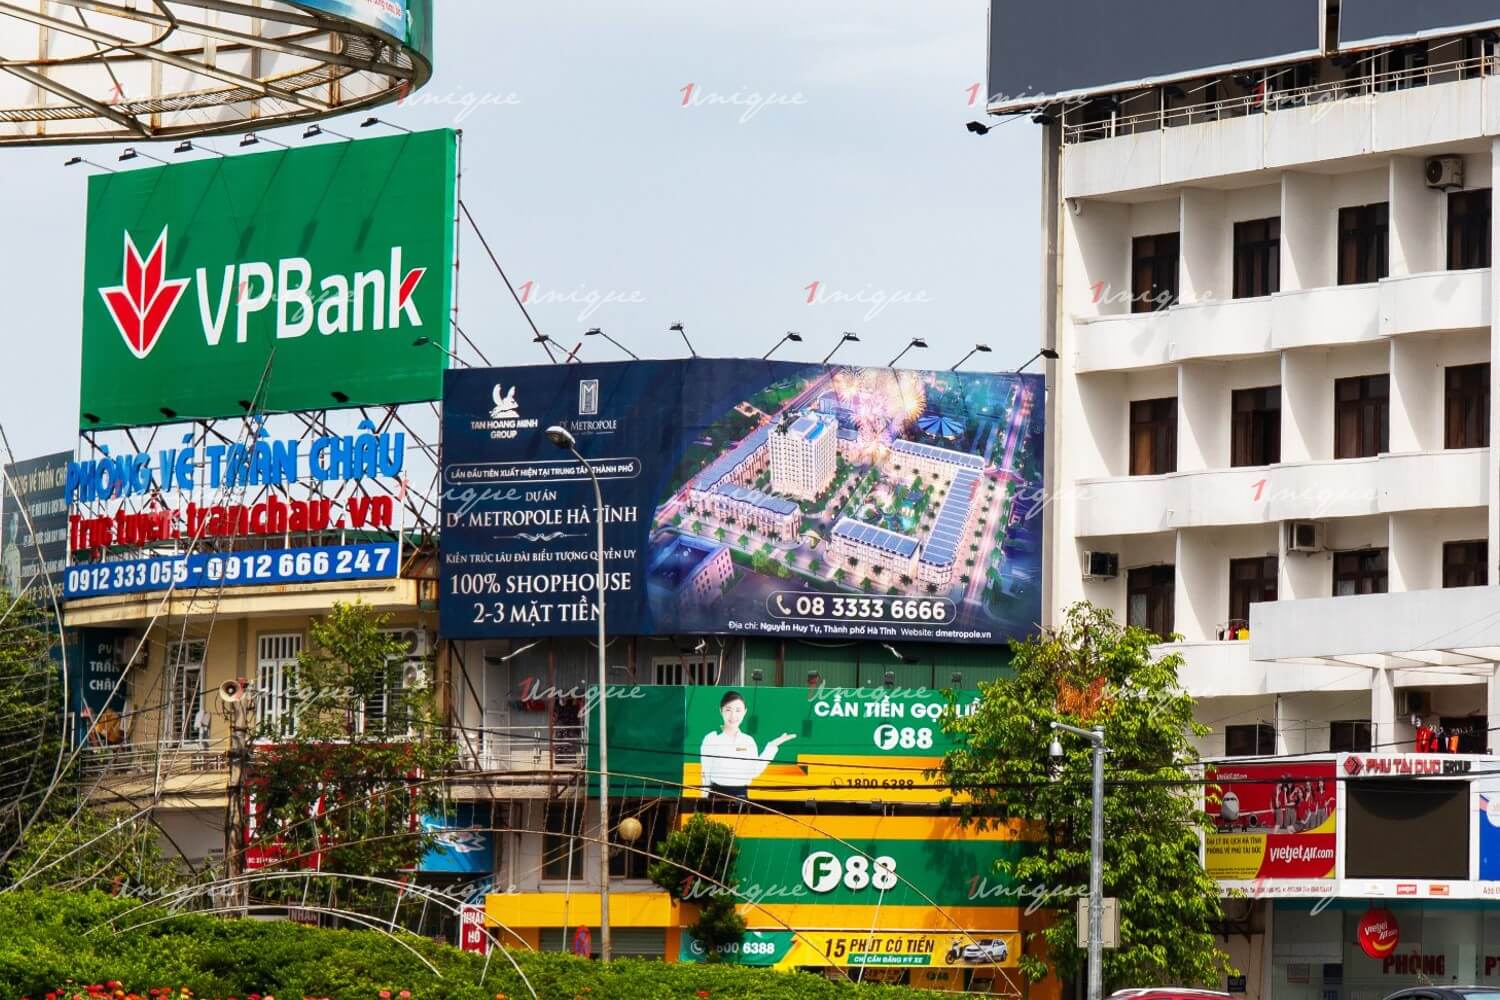 Pano quảng cáo tại Hà Tĩnh của dự án Bất động sản D'Metropole (Tân Hoàng Minh)